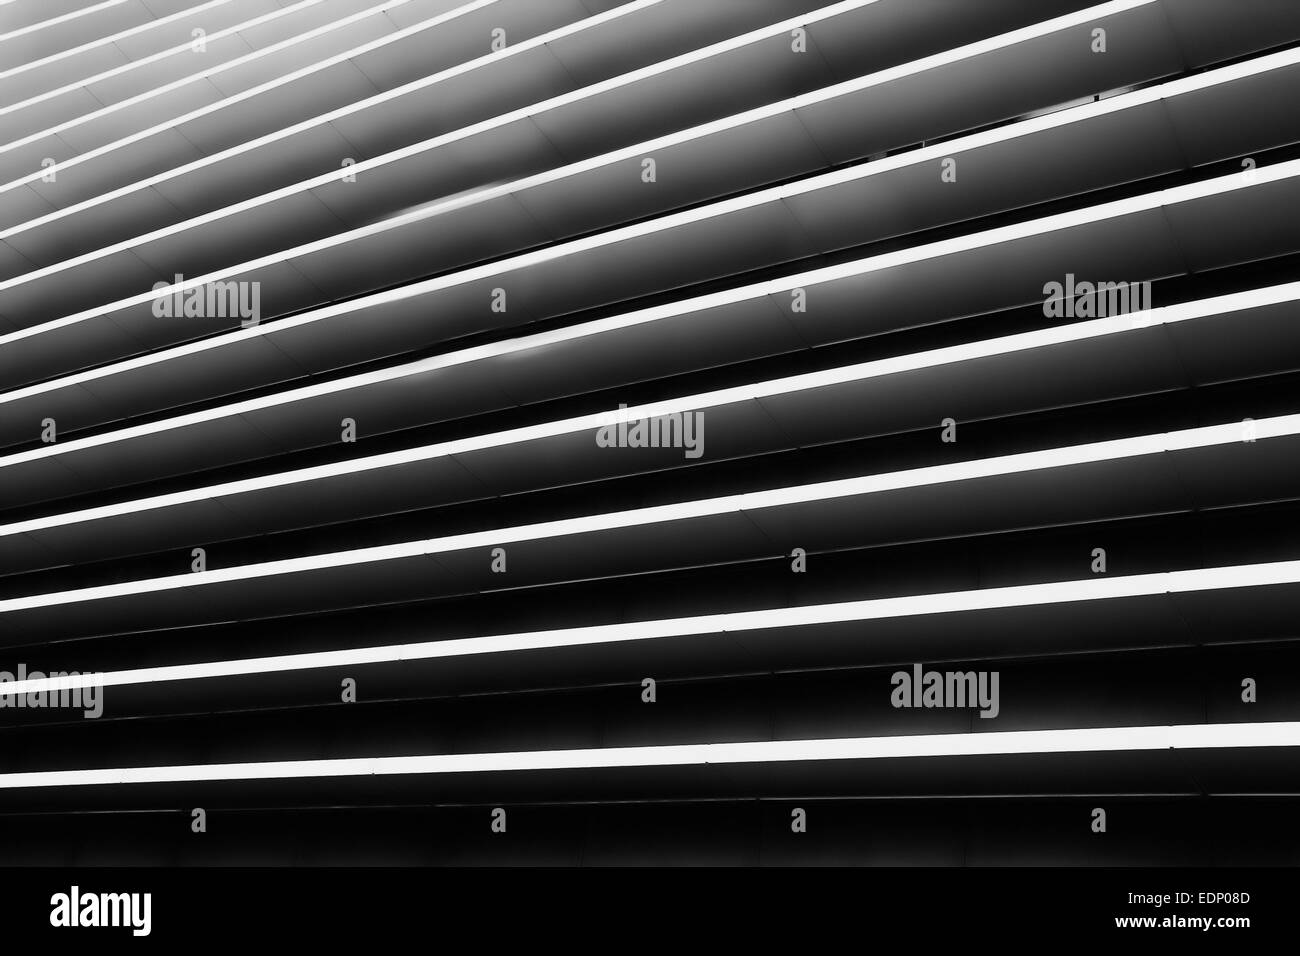 Zusammenfassung Hintergrund schwarz / weiß-Architektur Stockfoto